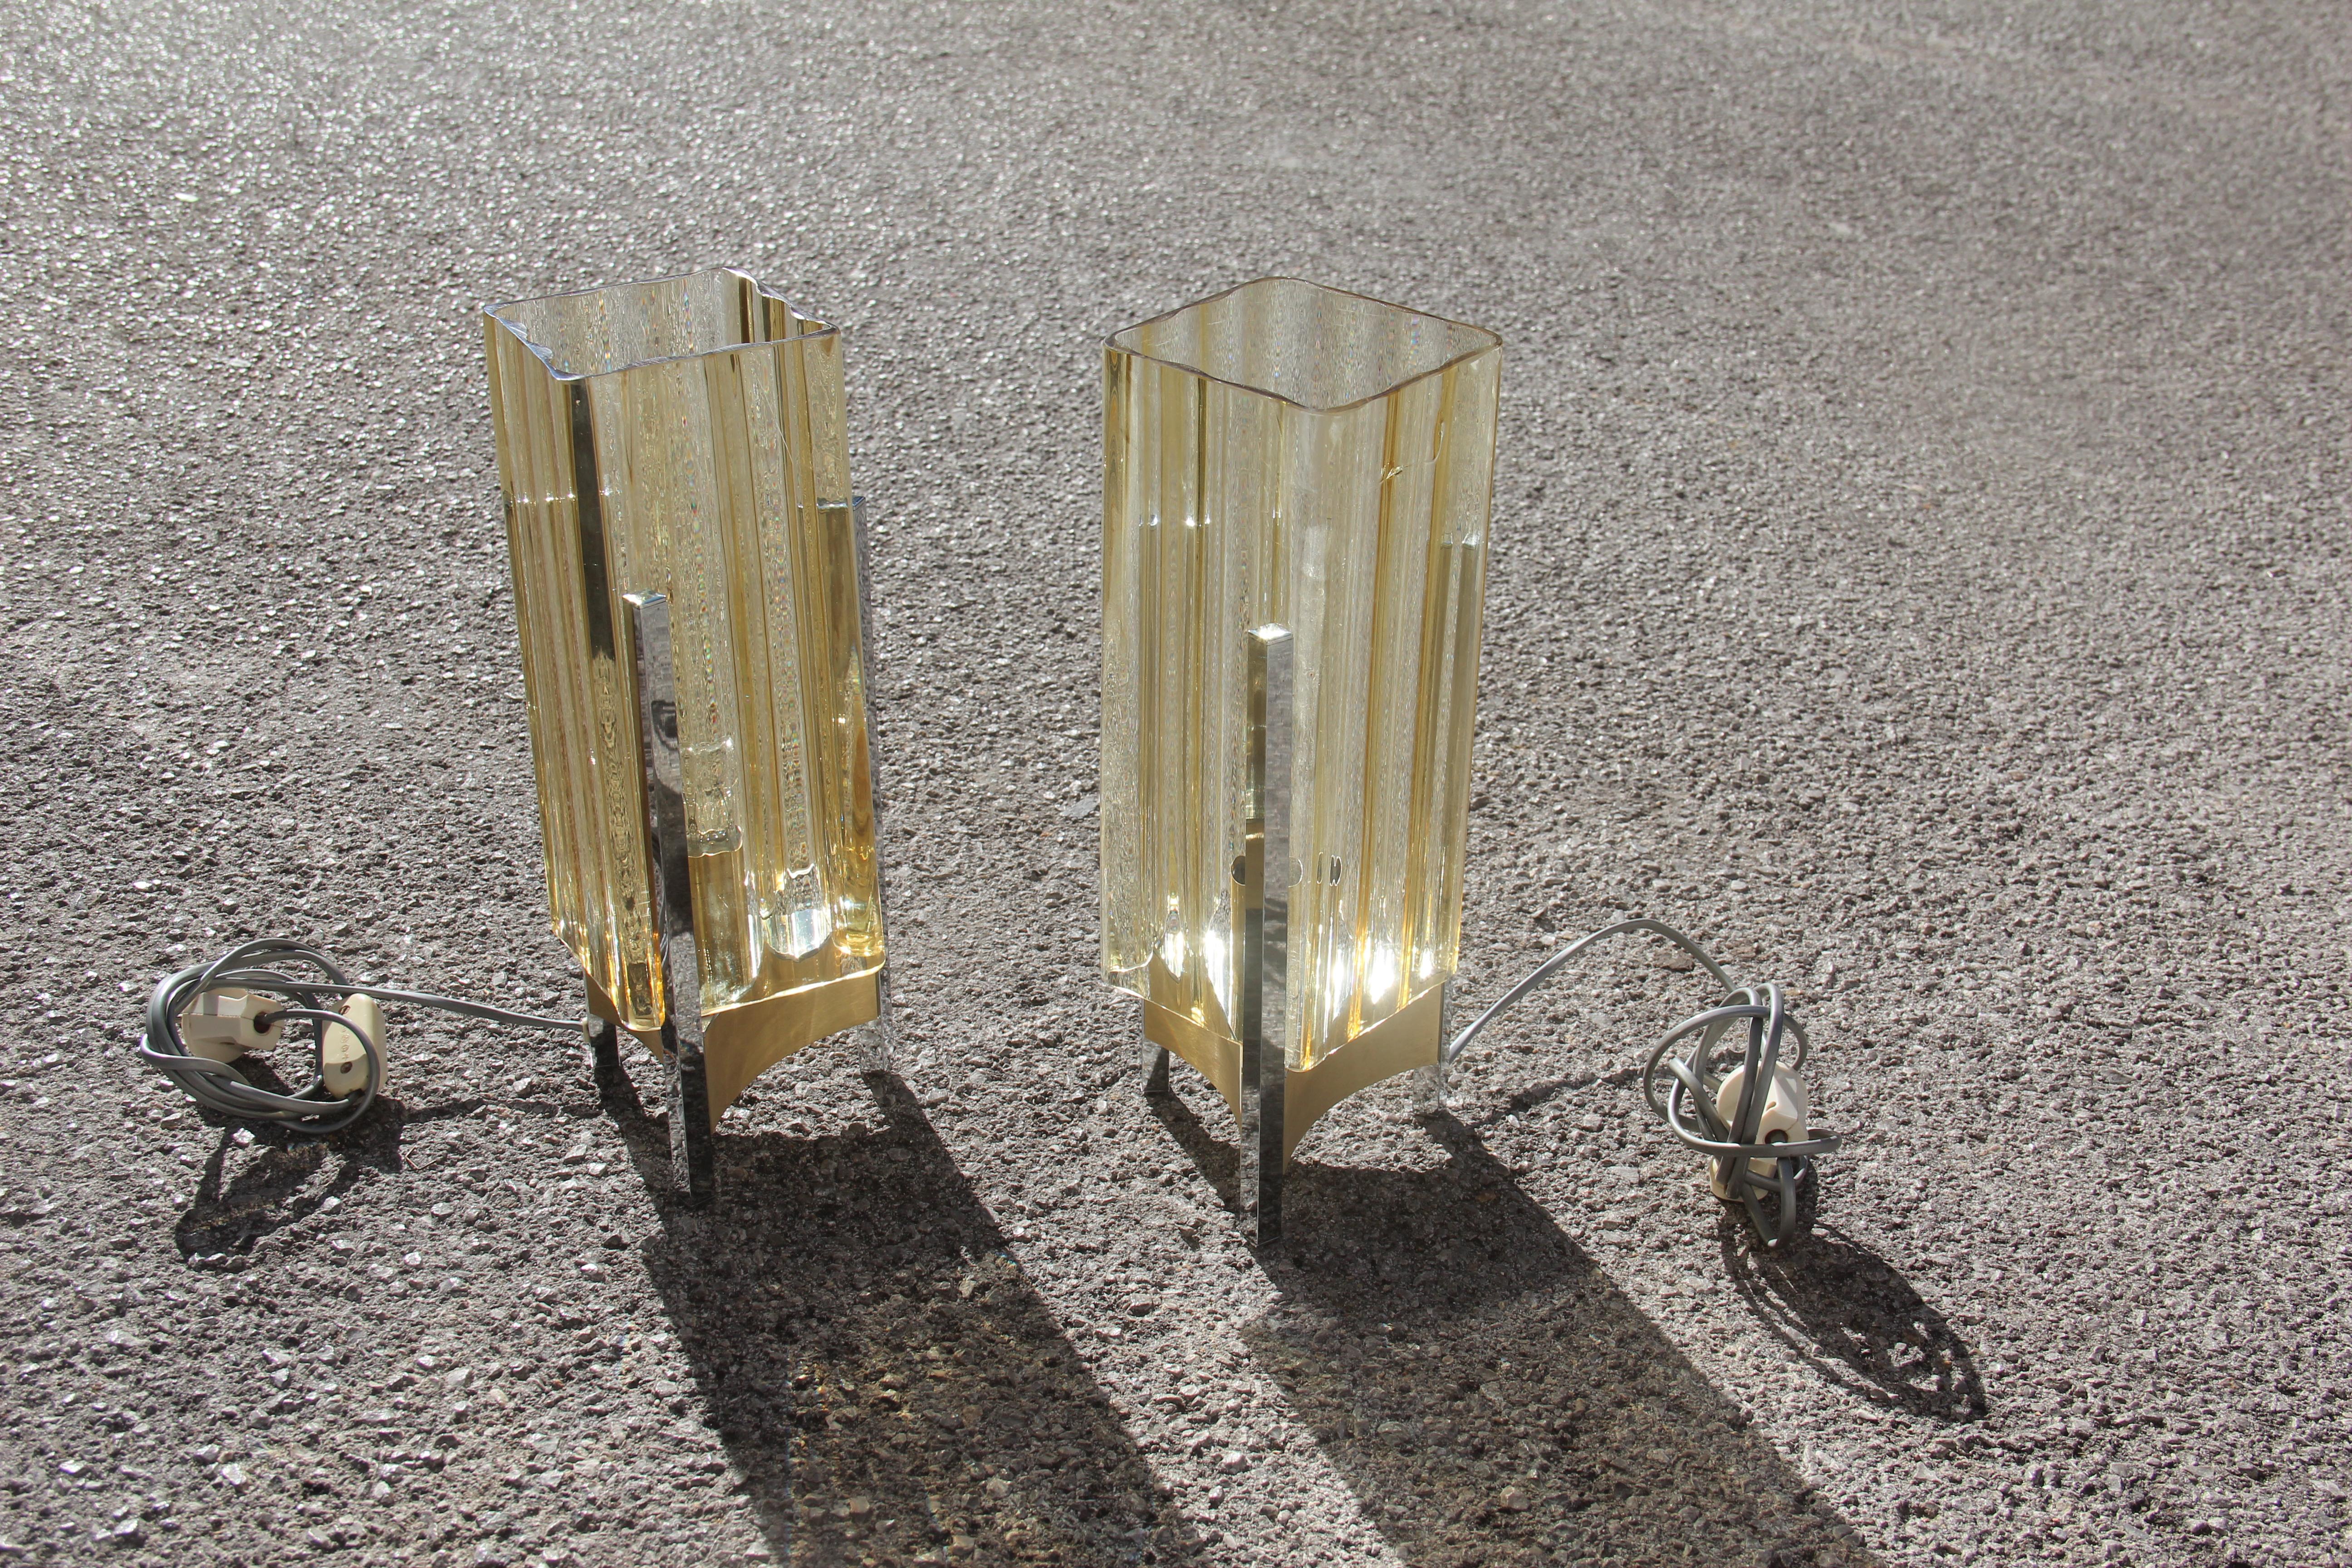 Pair of Table Lamp Sciolari Design Cubic Form Steel Yellow Murano Glass Italian (Italienisch)